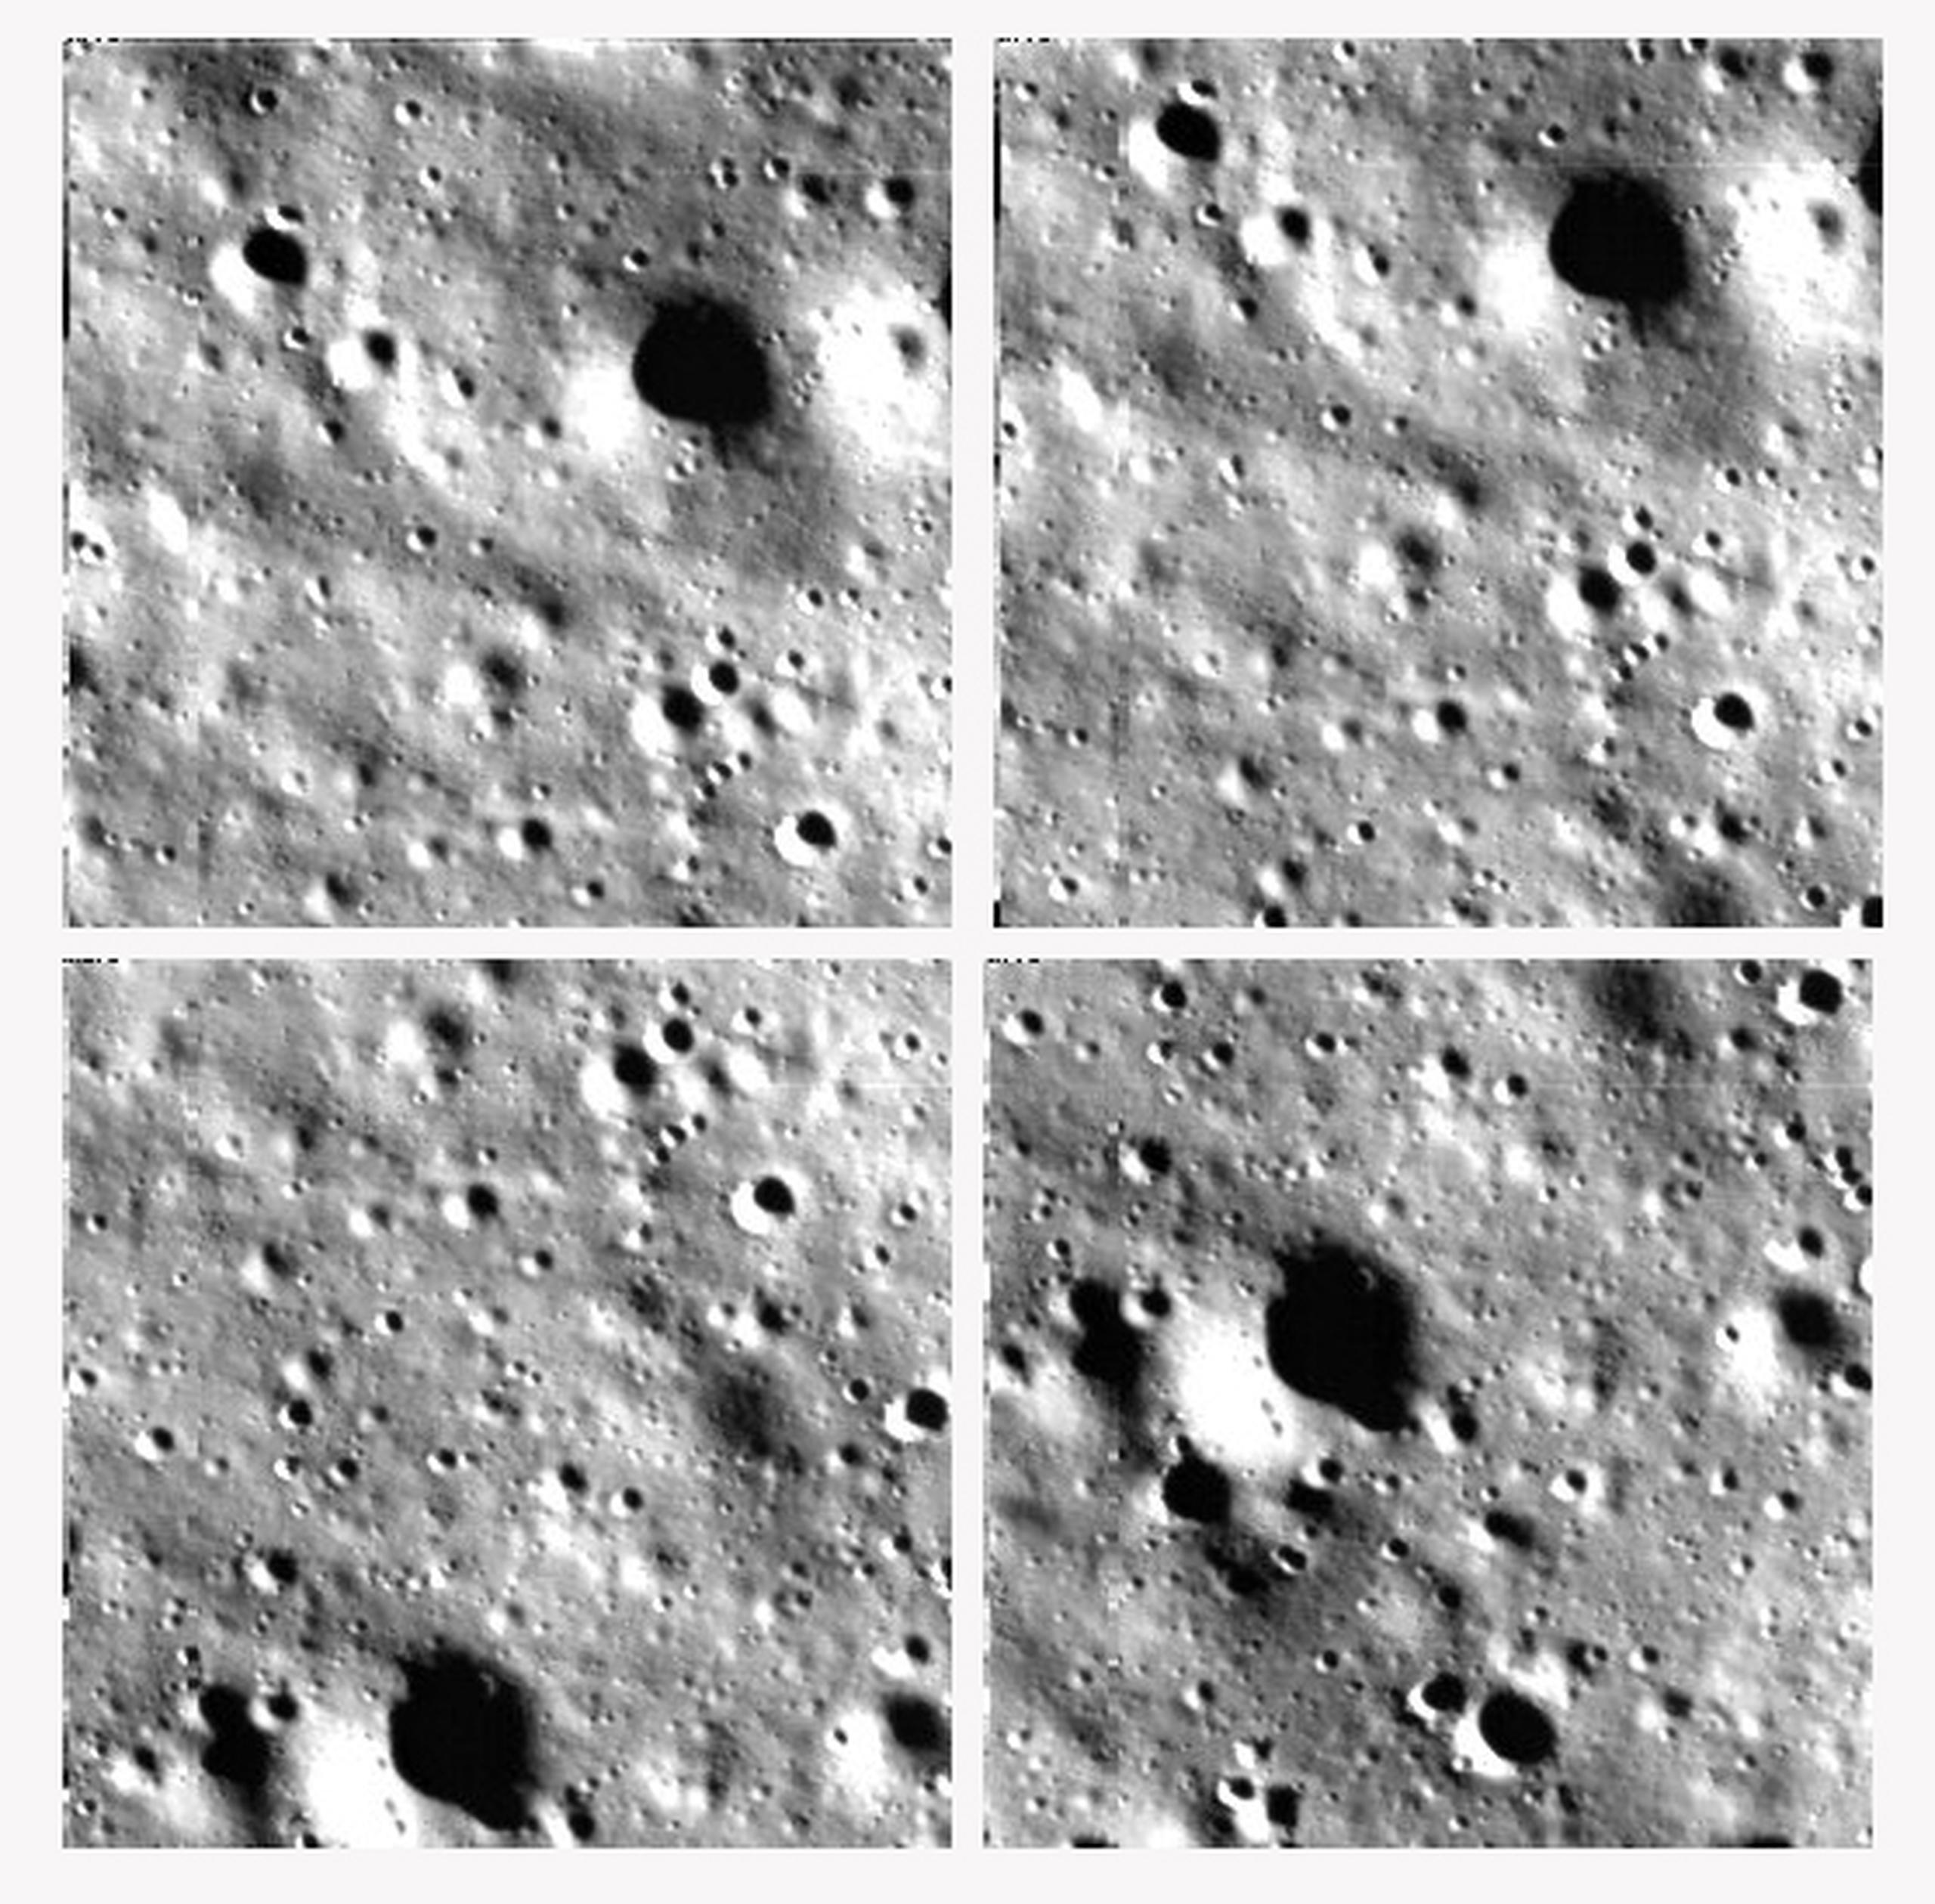 La Agencia Espacial de la India subió ayer imágenes de la Luna tomadas durante la etapa de alunizaje de su misión espacial Chandrayaan-3 en el polo sur de la Luna. EFE/Agencia Espacial de la India